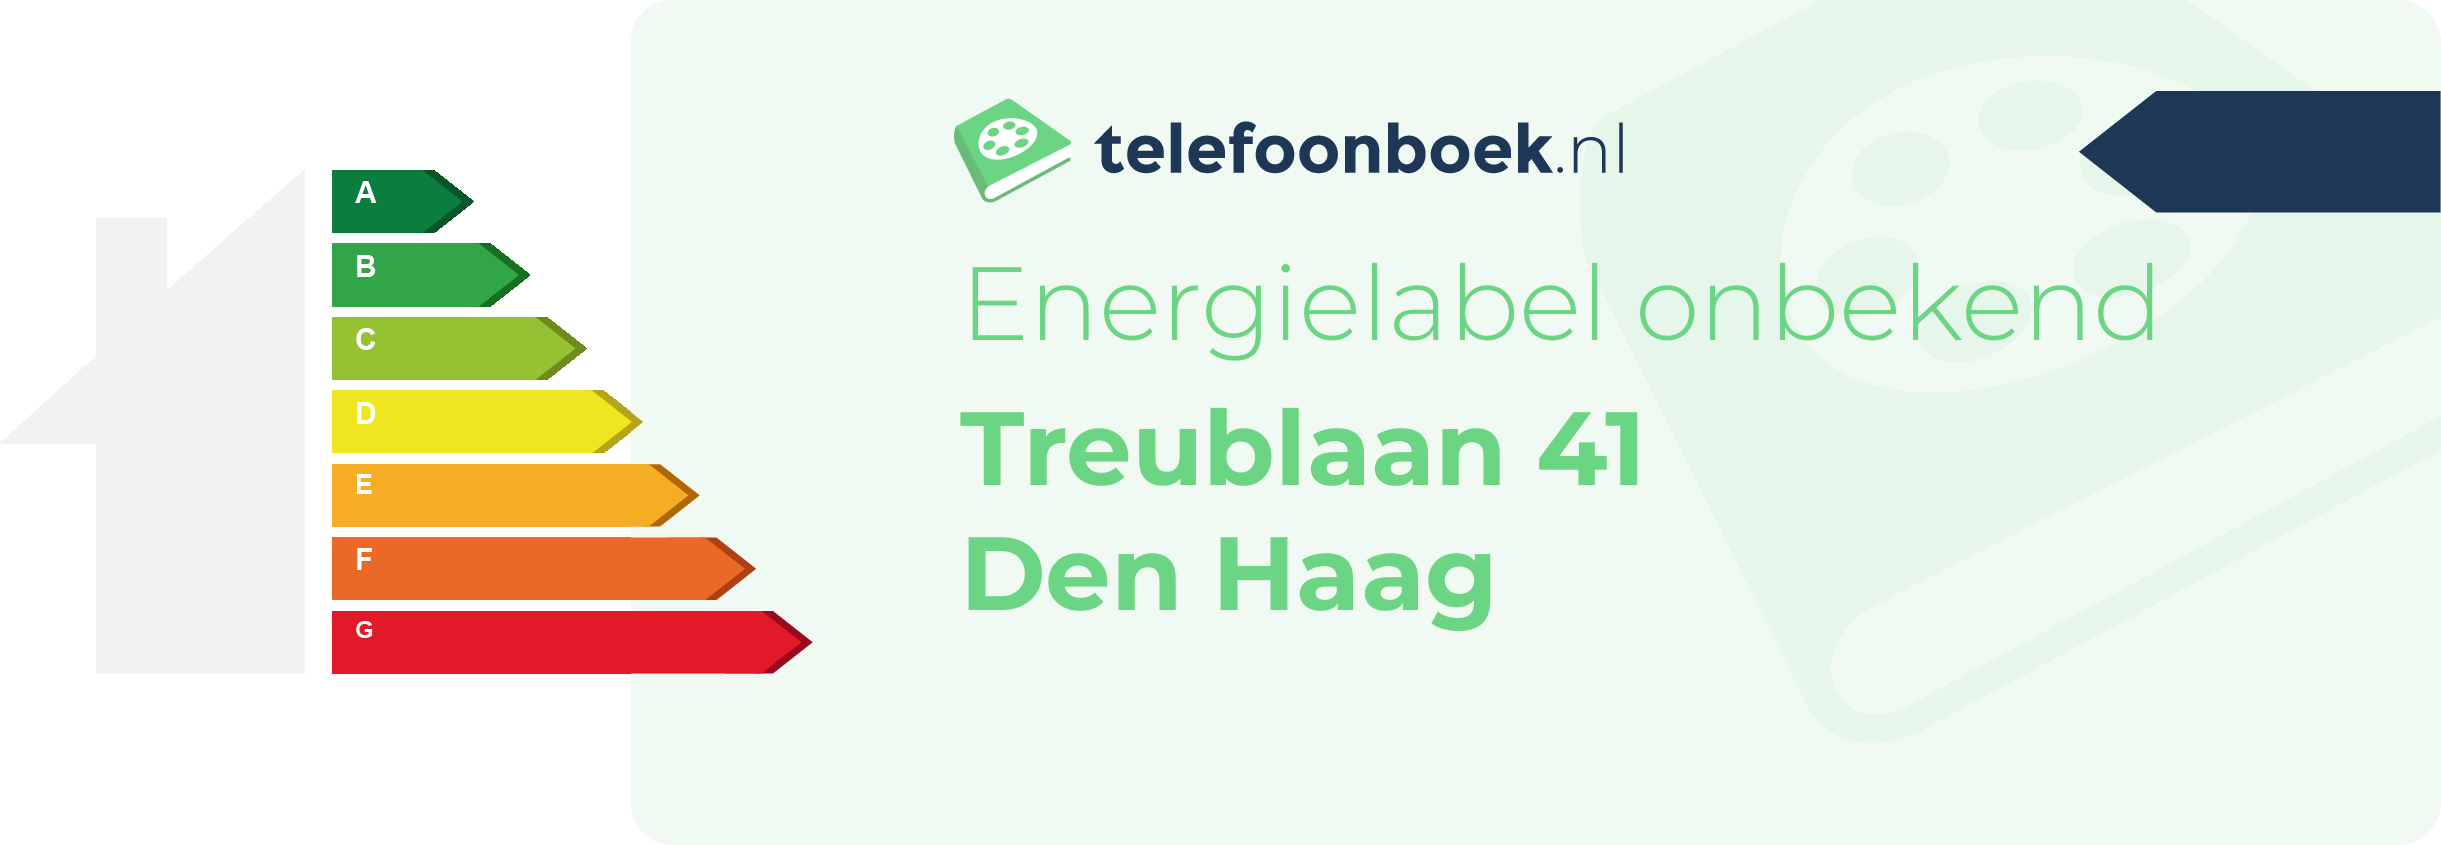 Energielabel Treublaan 41 Den Haag